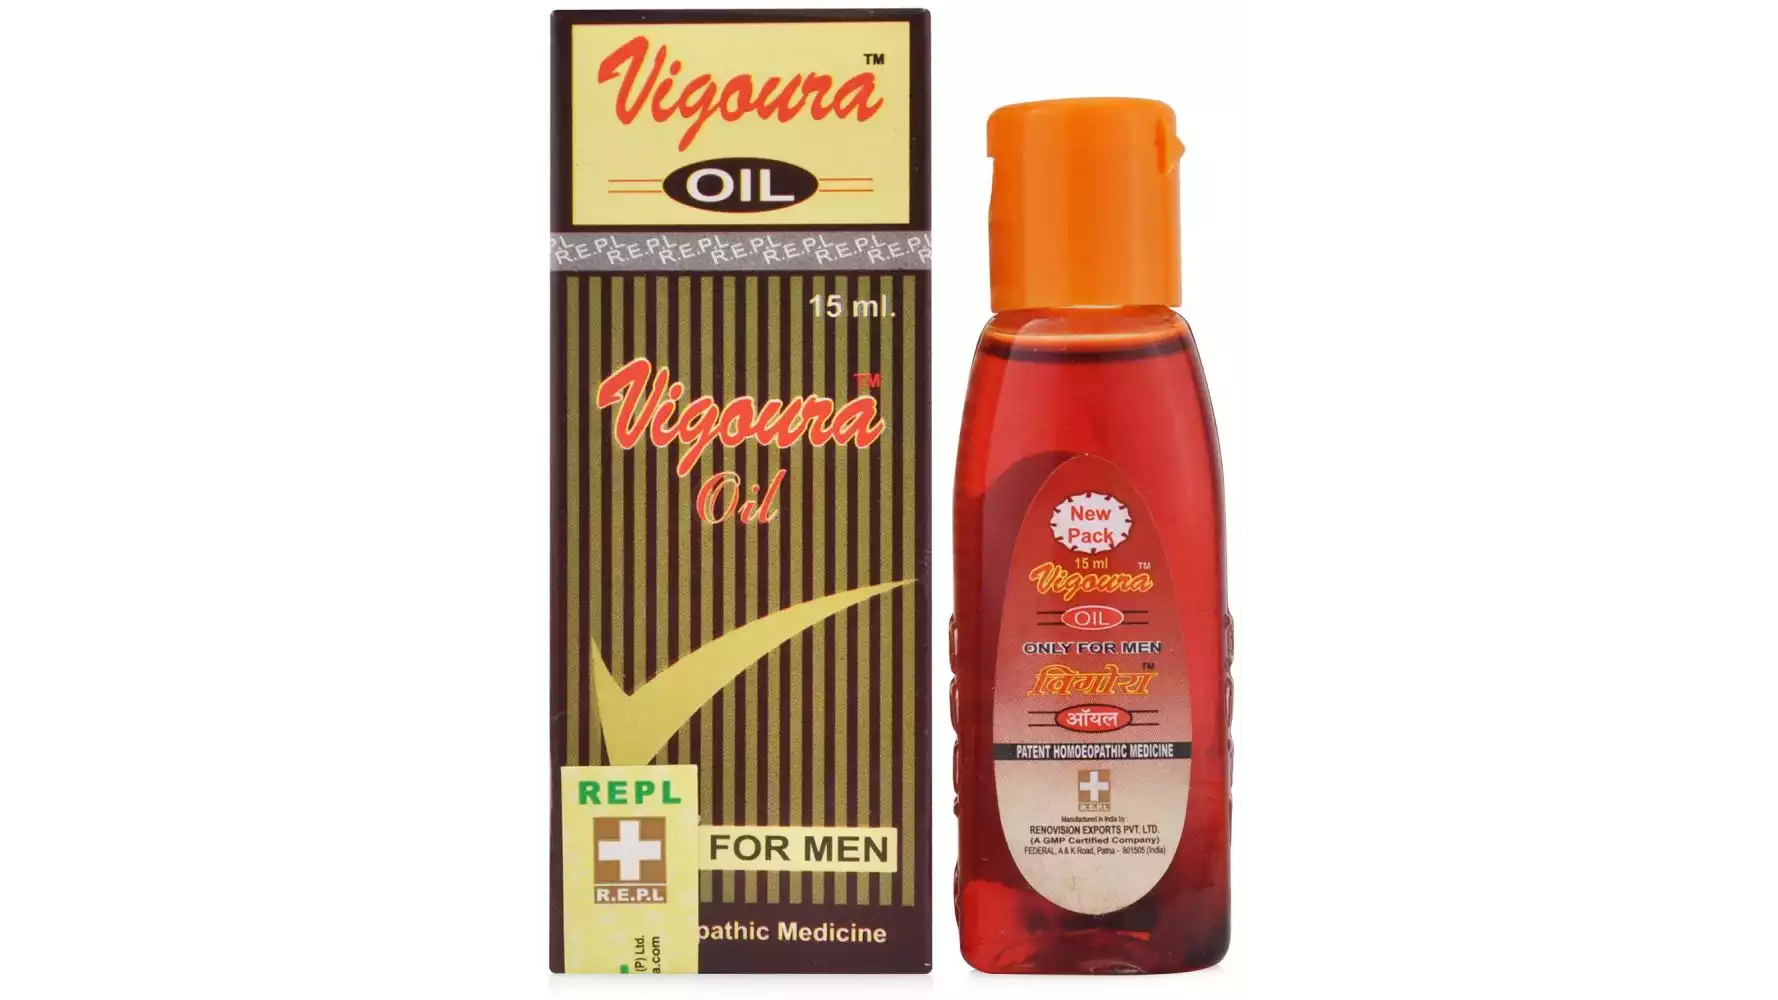 REPL Vigoura Oil (15ml)